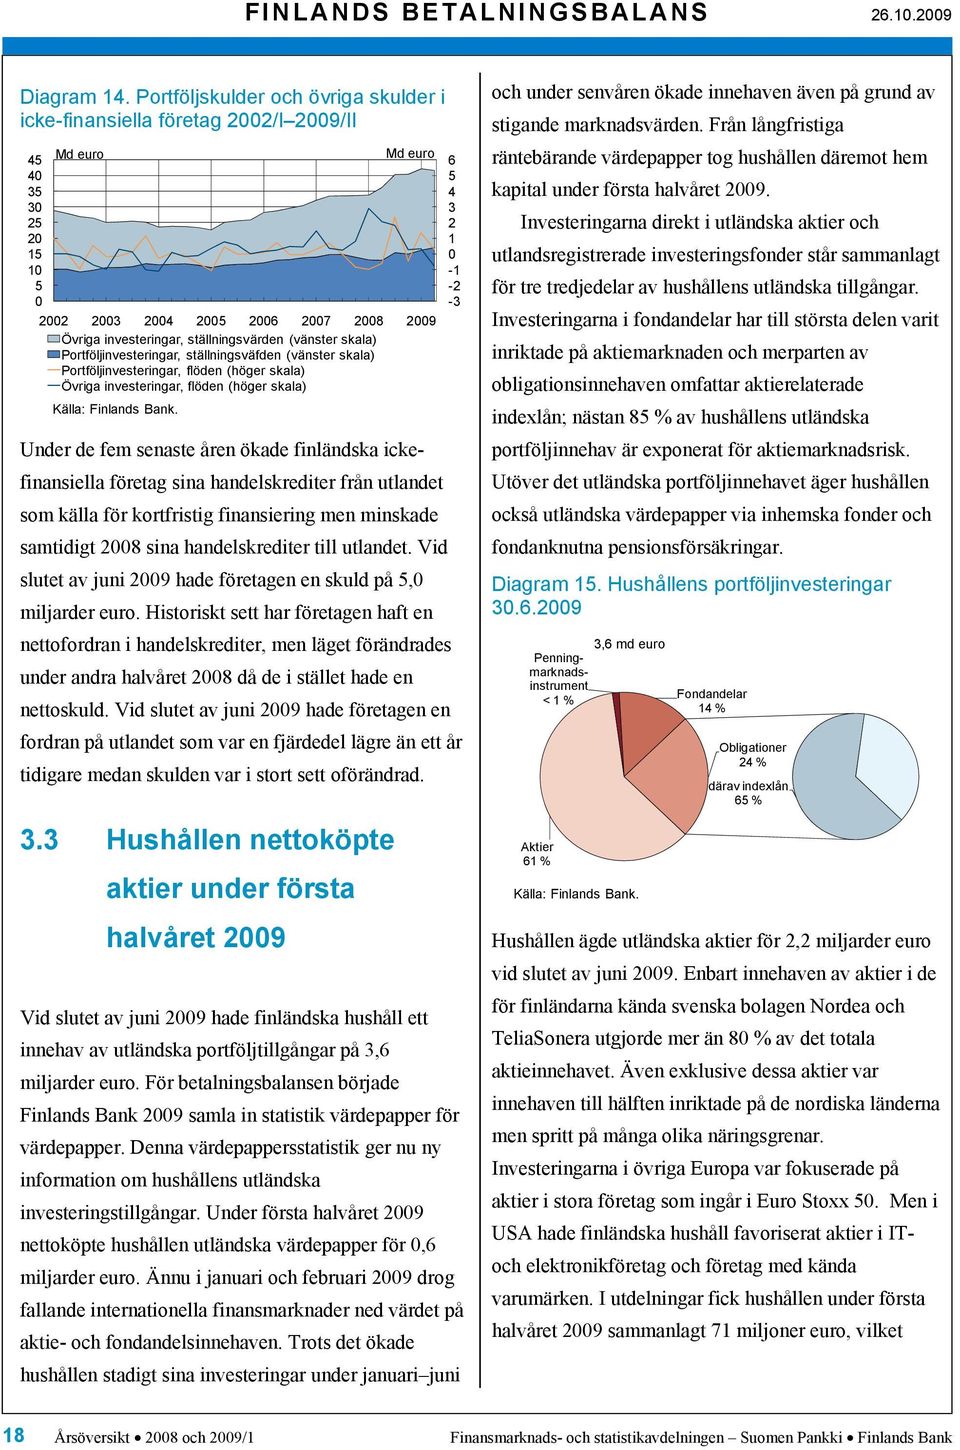 ställningsväfden (vänster skala) Portföljinvesteringar, flöden (höger skala) Övriga investeringar, flöden (höger skala) Under de fem senaste åren ökade finländska ickefinansiella företag sina